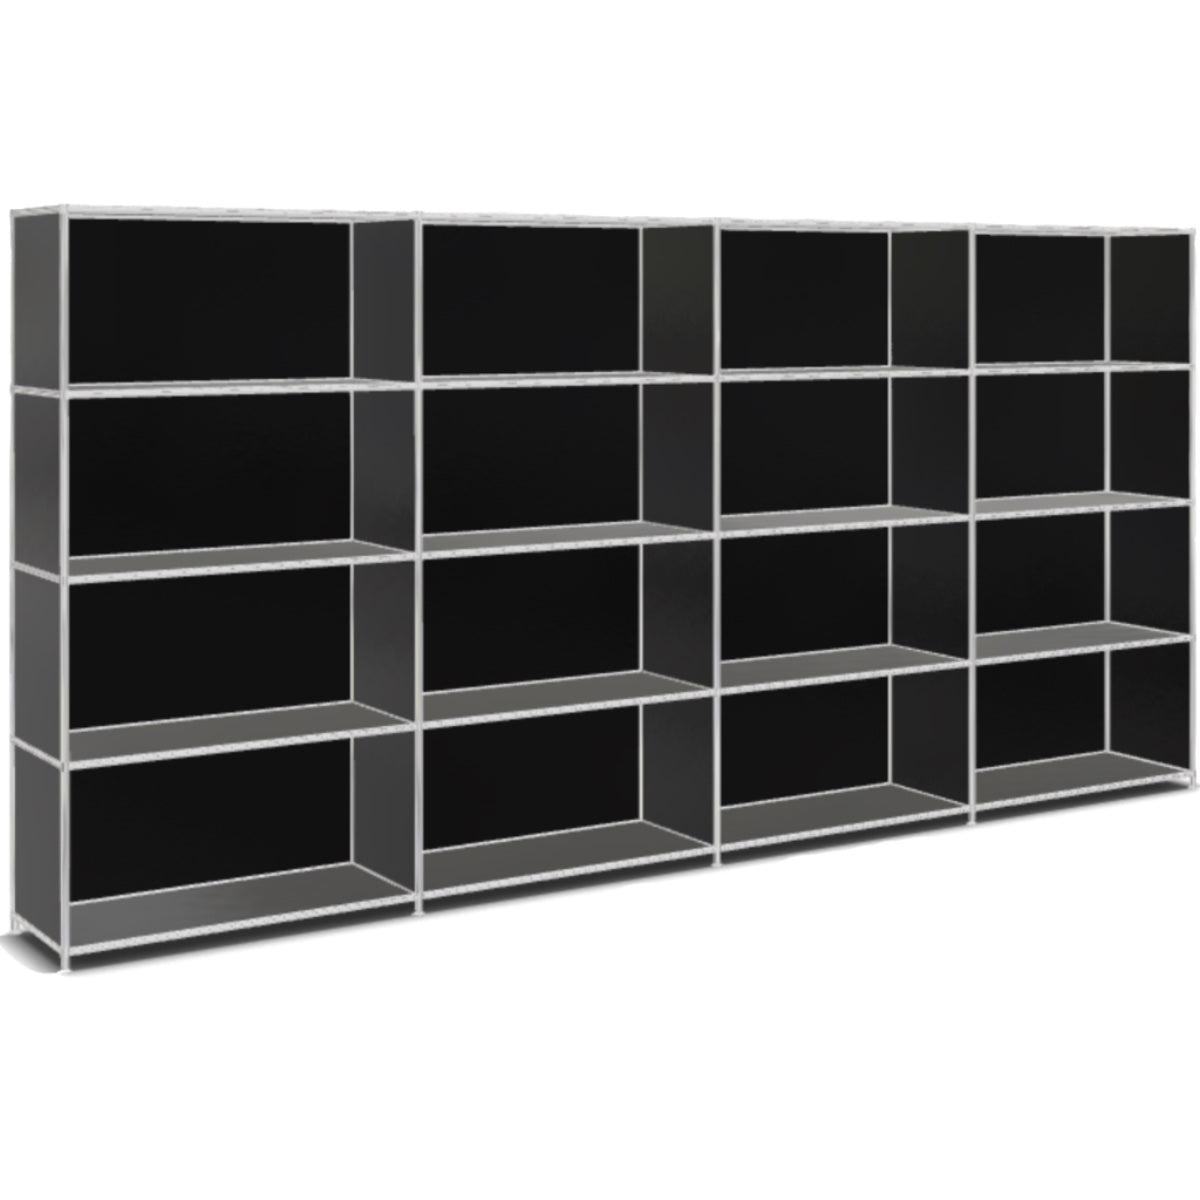 System4 Shelf, 303 x 155 x 40 cm, Black